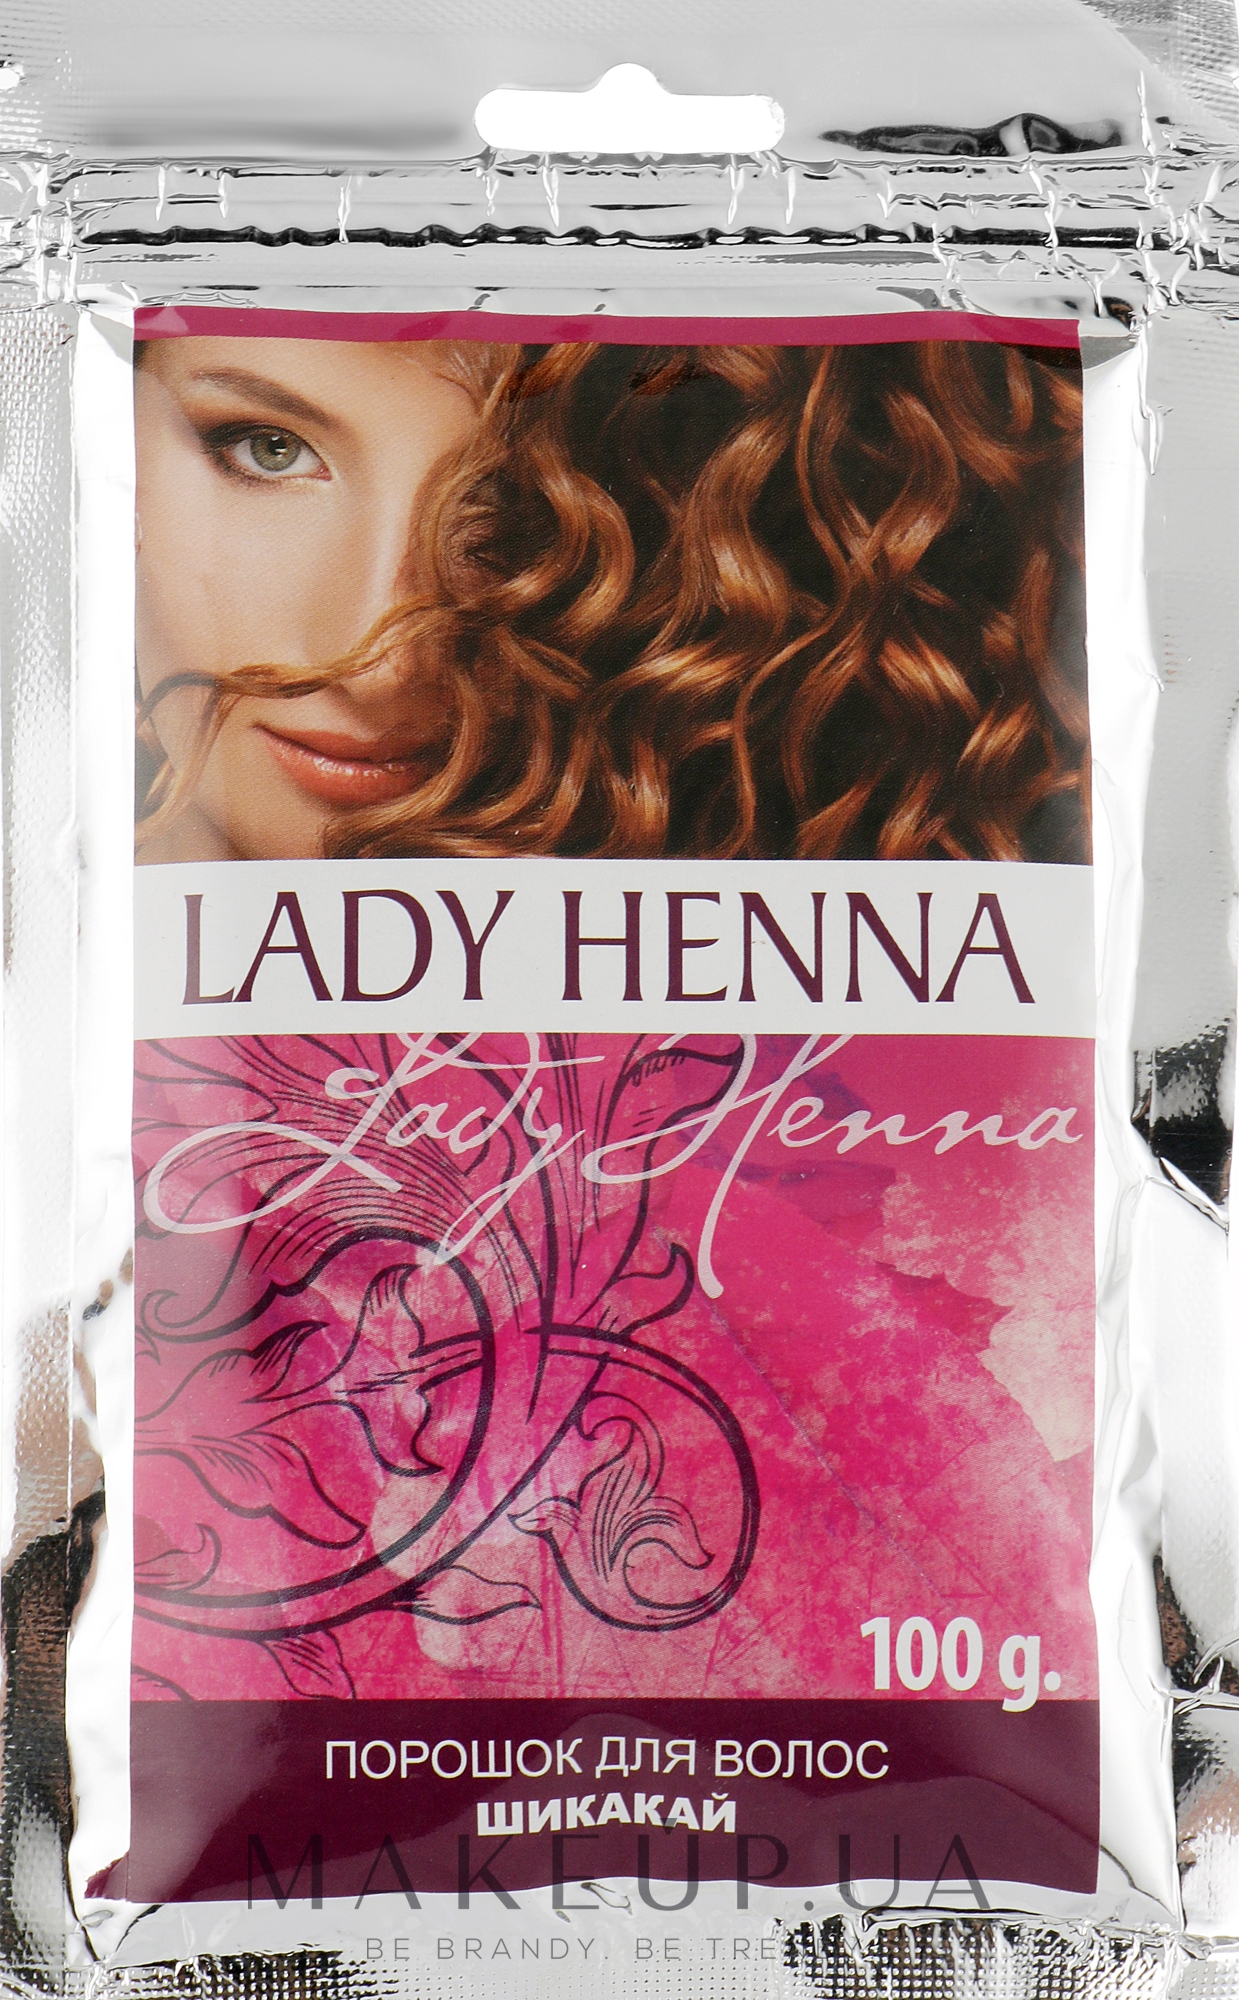 Порошок для волос "Шикакай" - Lady Henna  — фото 100g